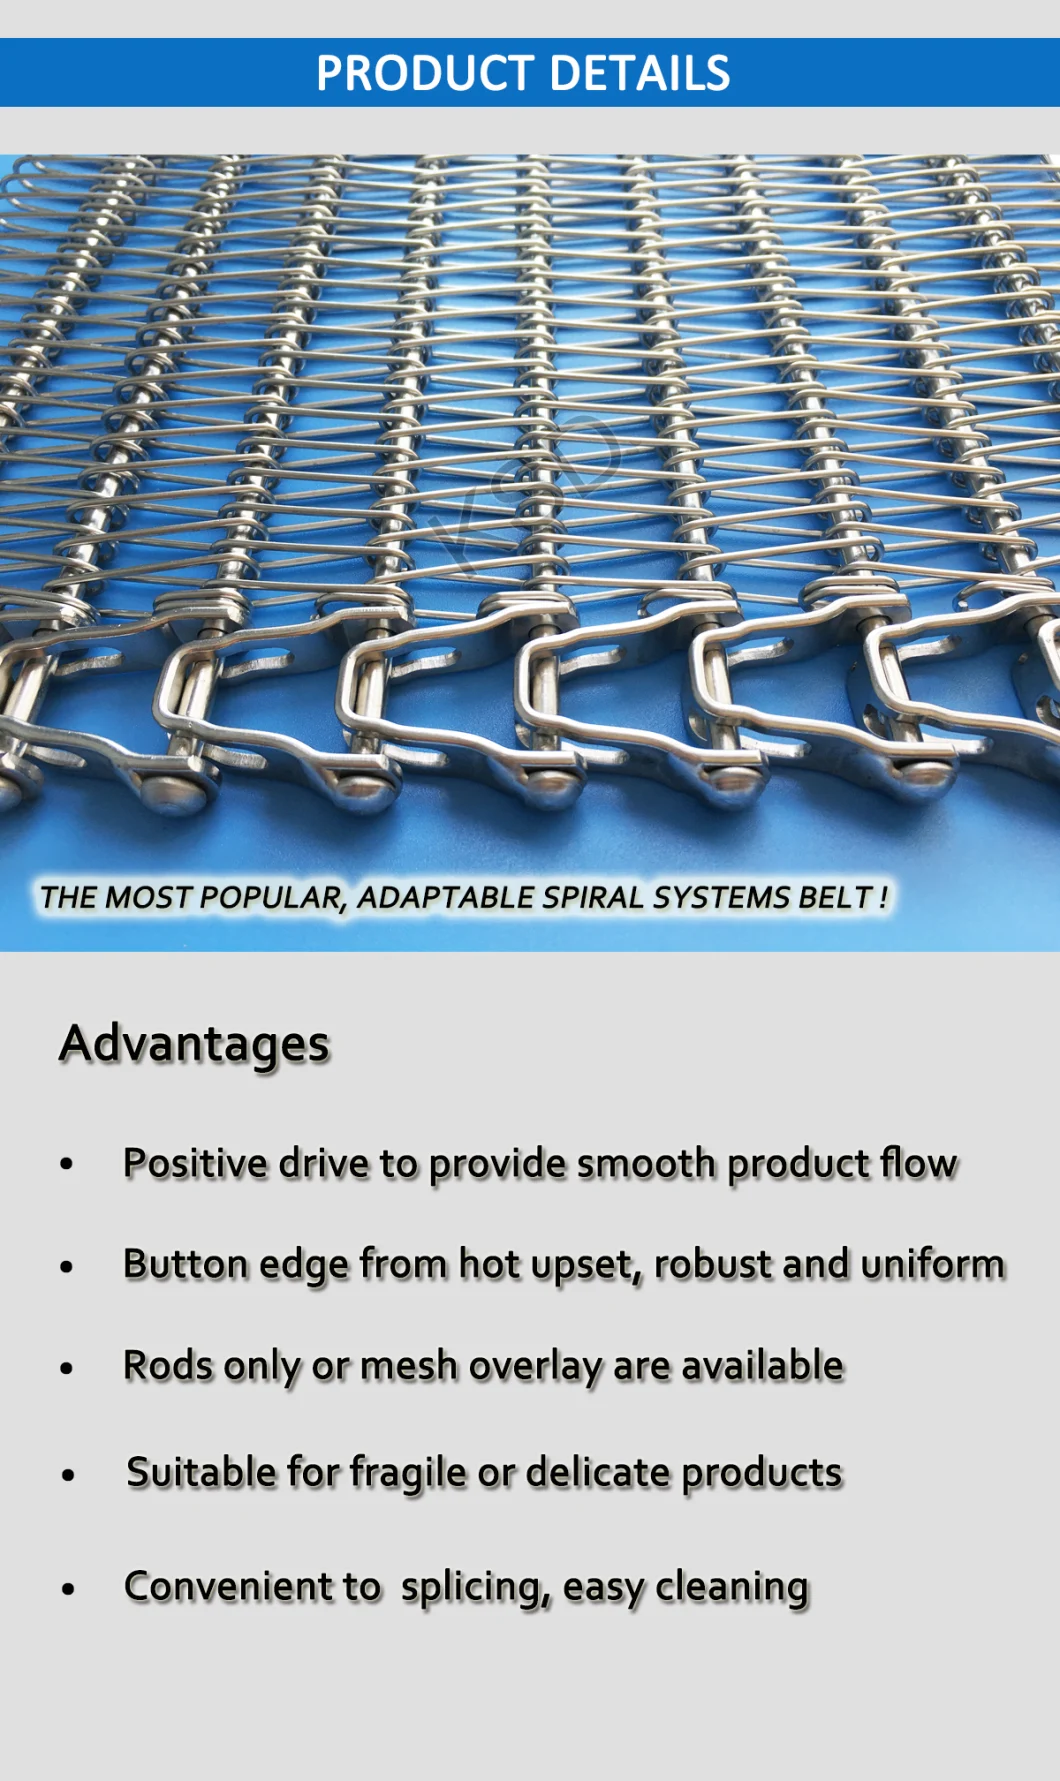 Stainless Steel Spiral Freezer Belt, Spiral Cooler Belt, Spiral Proofer Belt, Spiral Cooker Belt